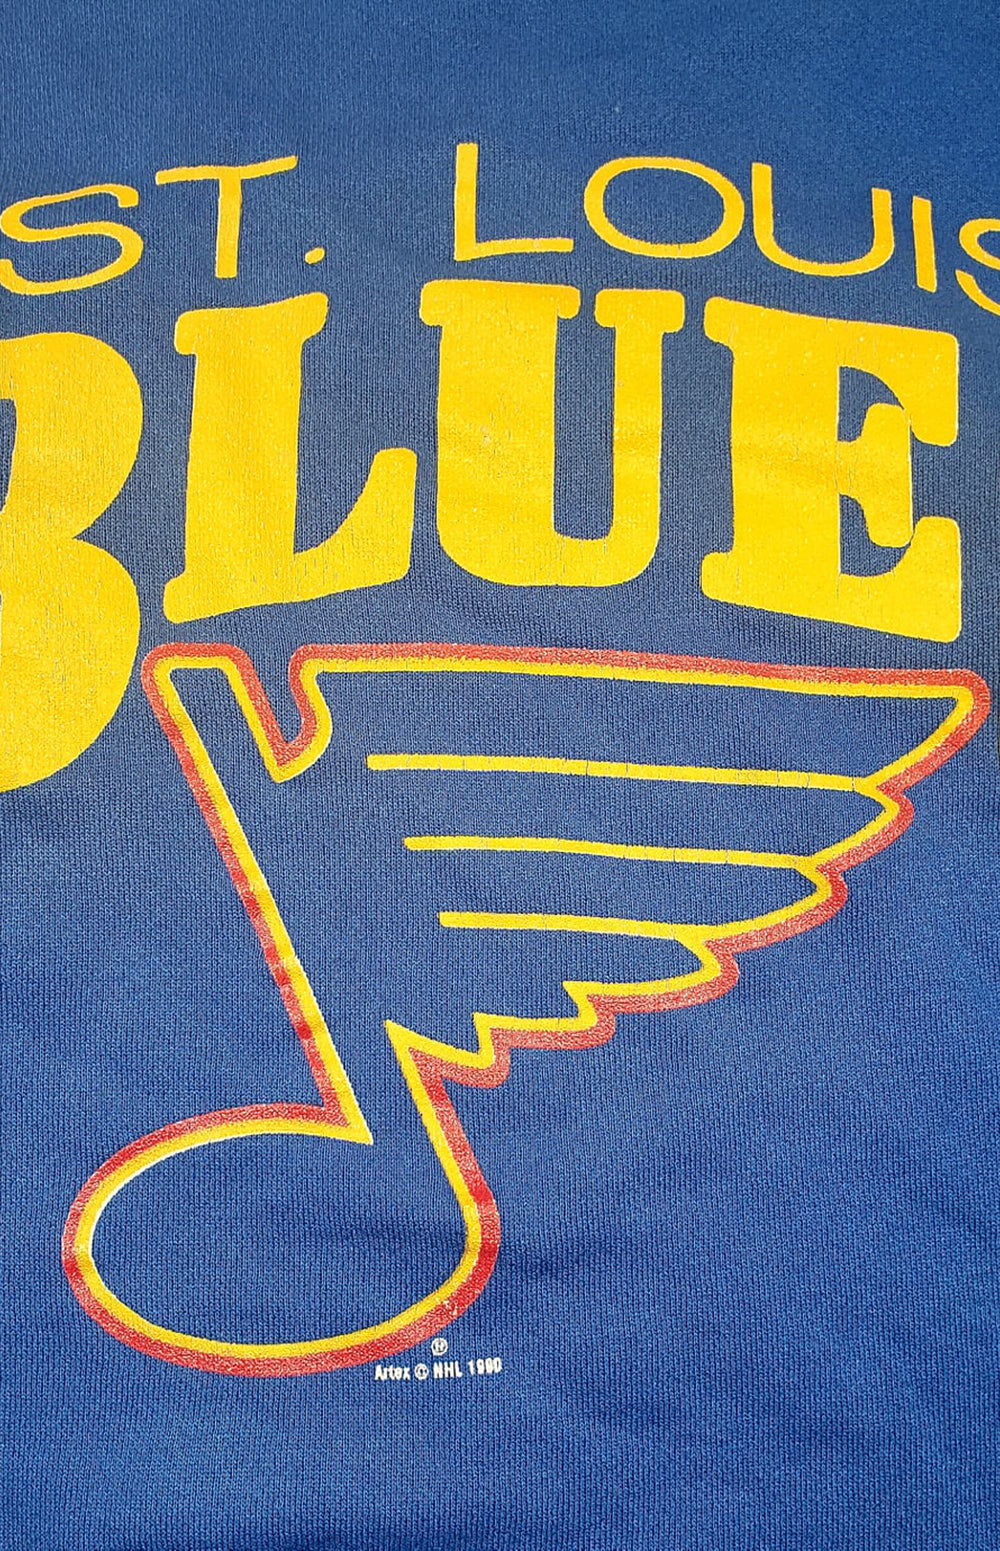 vintage stl blues sweatshirt